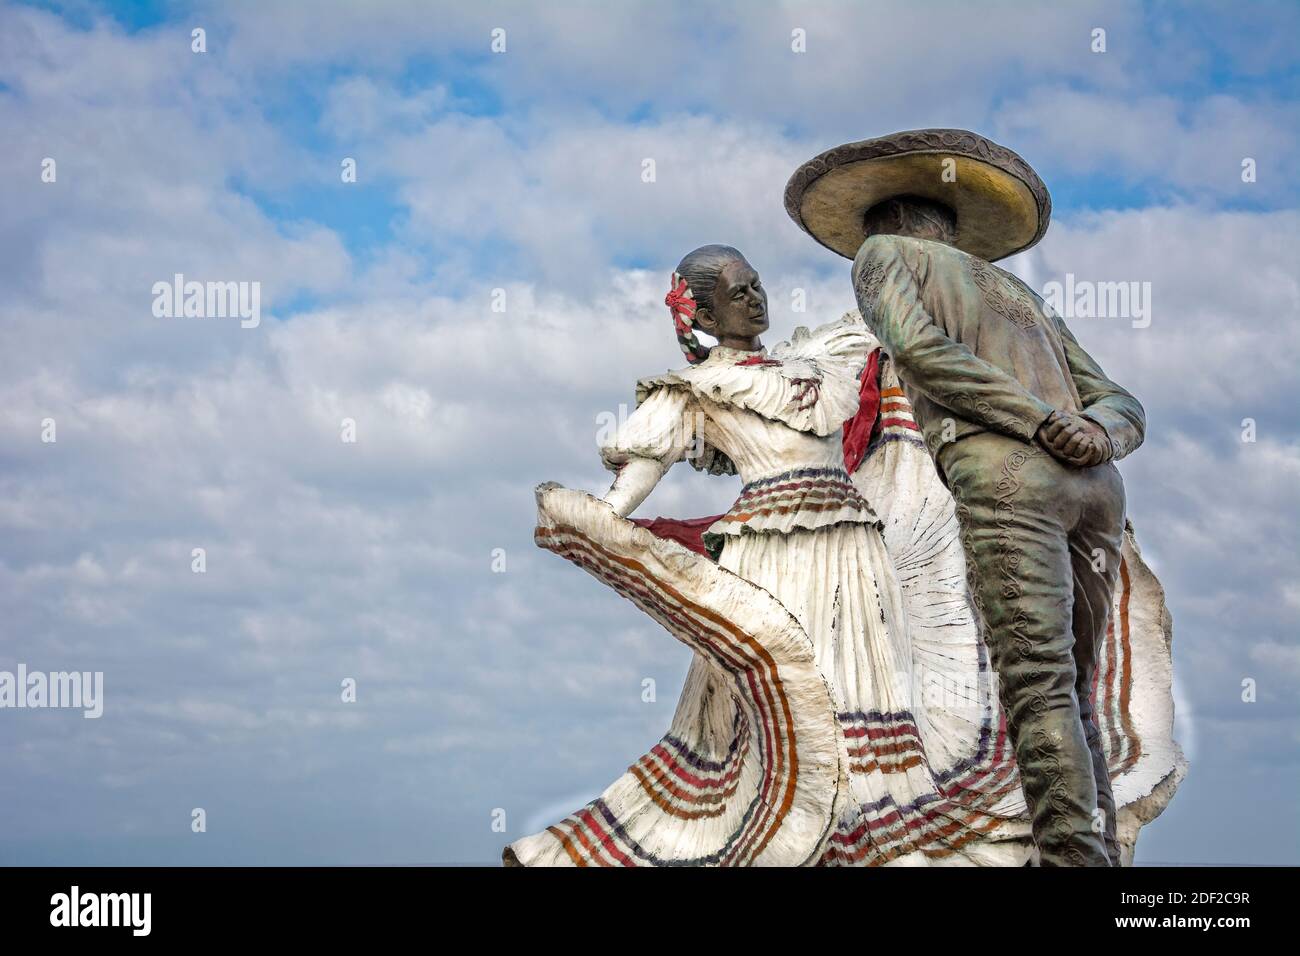 Sculpture de « Vallarta Dancers » (Bailarines de Vallarta) par Jim Demetro sur le Malecon à Puerto Vallarta, Jalisco, Mexique. Banque D'Images